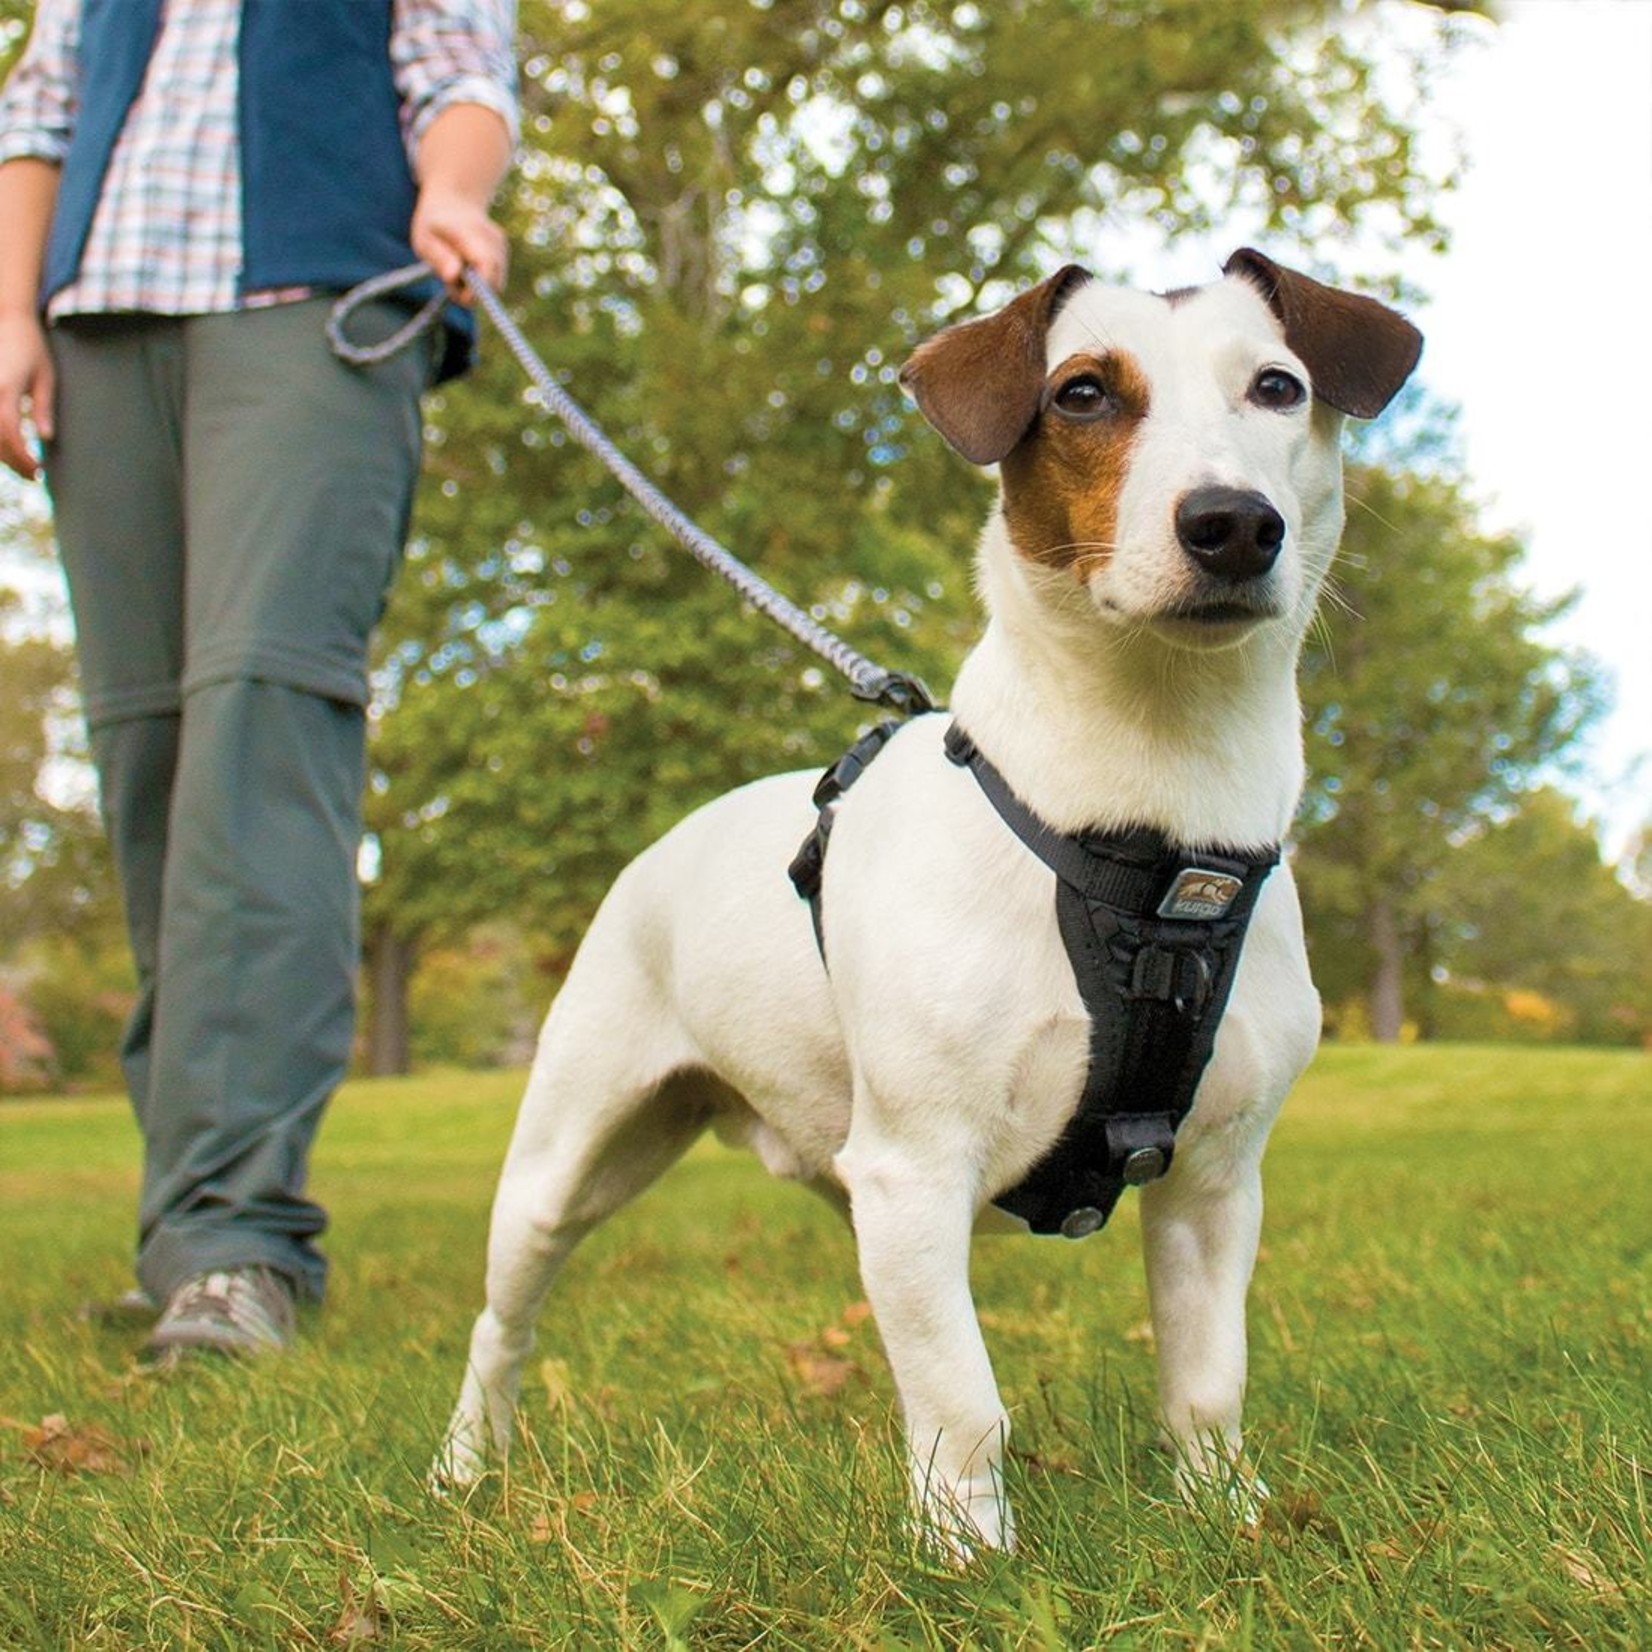 Kurgo Kurgo Tru Fit Smart Dog Walking No Pull Harness w/ Seat Belt Attachment